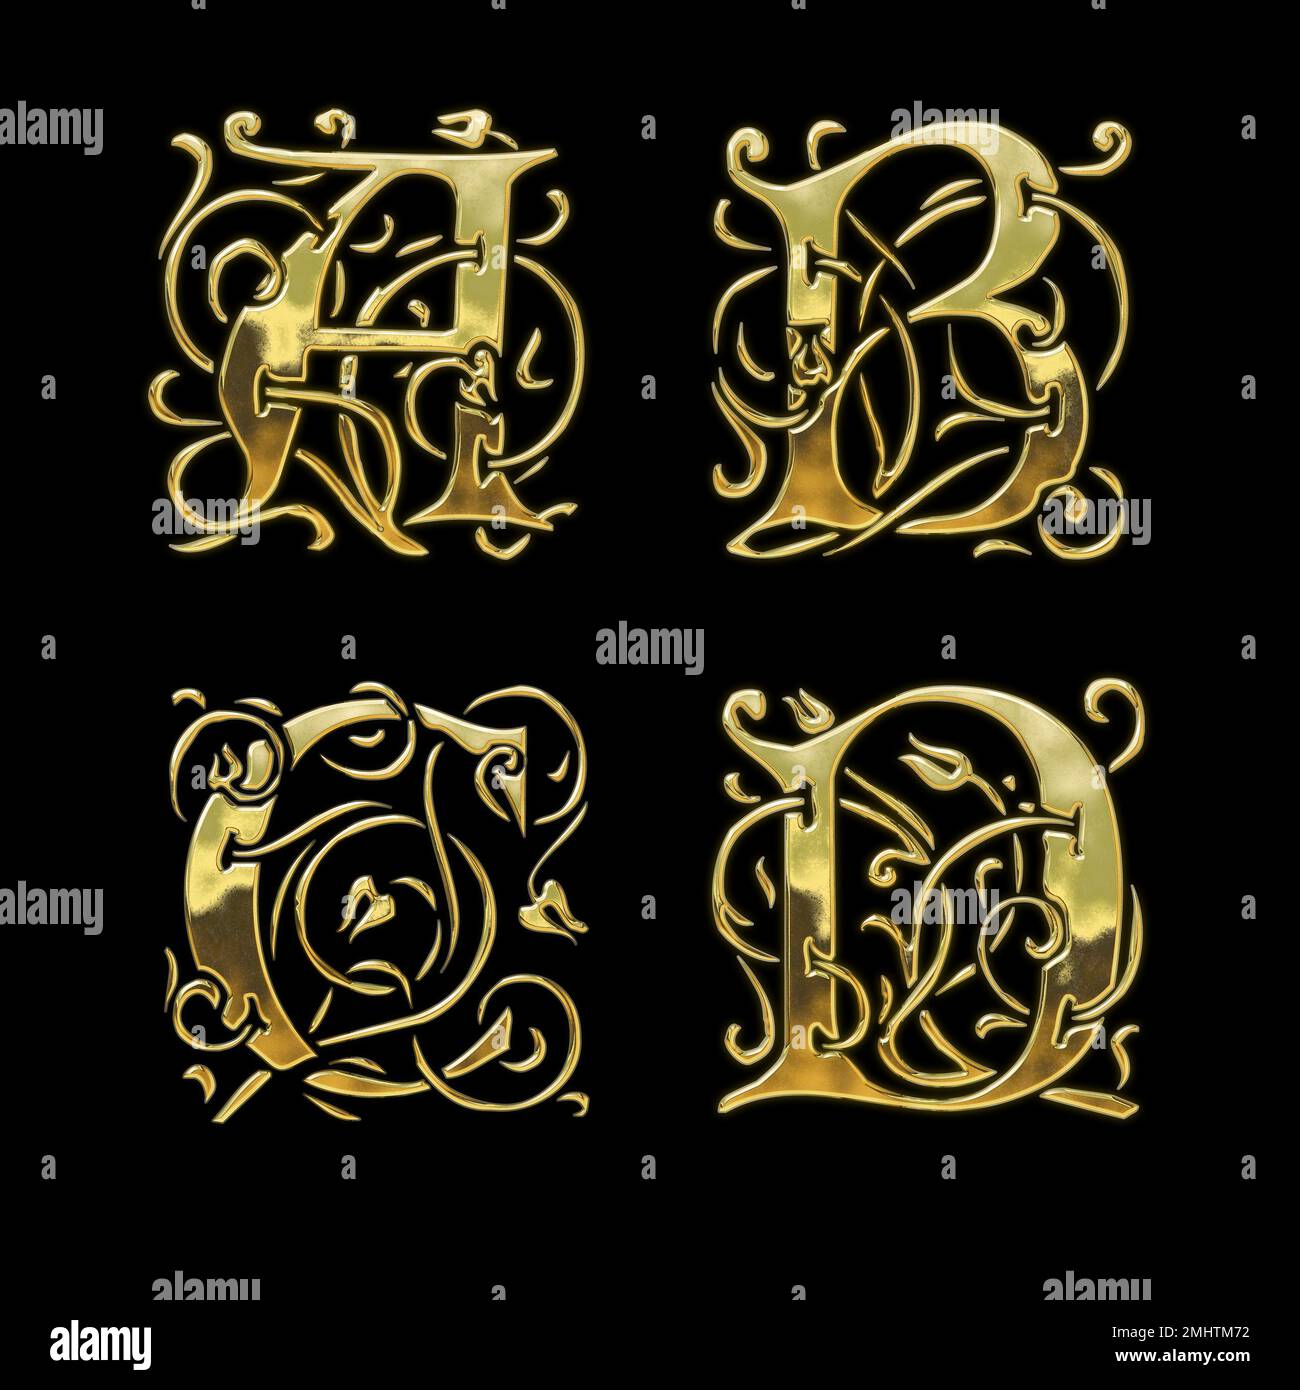 3D rendu de l'alphabet de police de style gothique doré - lettres A-D. Banque D'Images